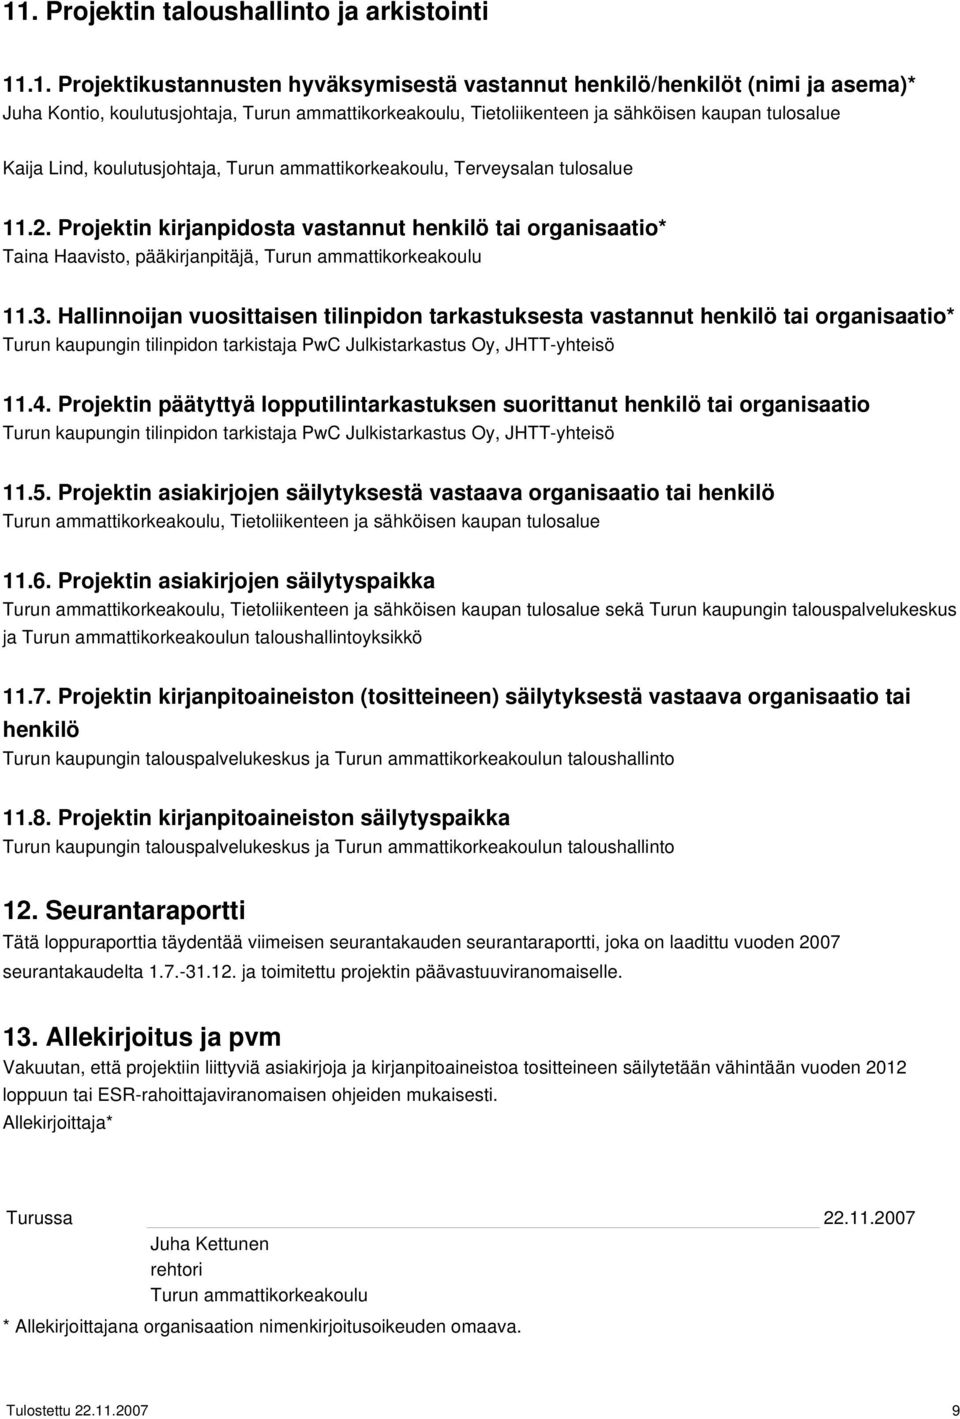 Projektin kirjanpidosta vastannut henkilö tai organisaatio* Taina Haavisto, pääkirjanpitäjä, Turun ammattikorkeakoulu 11.3.